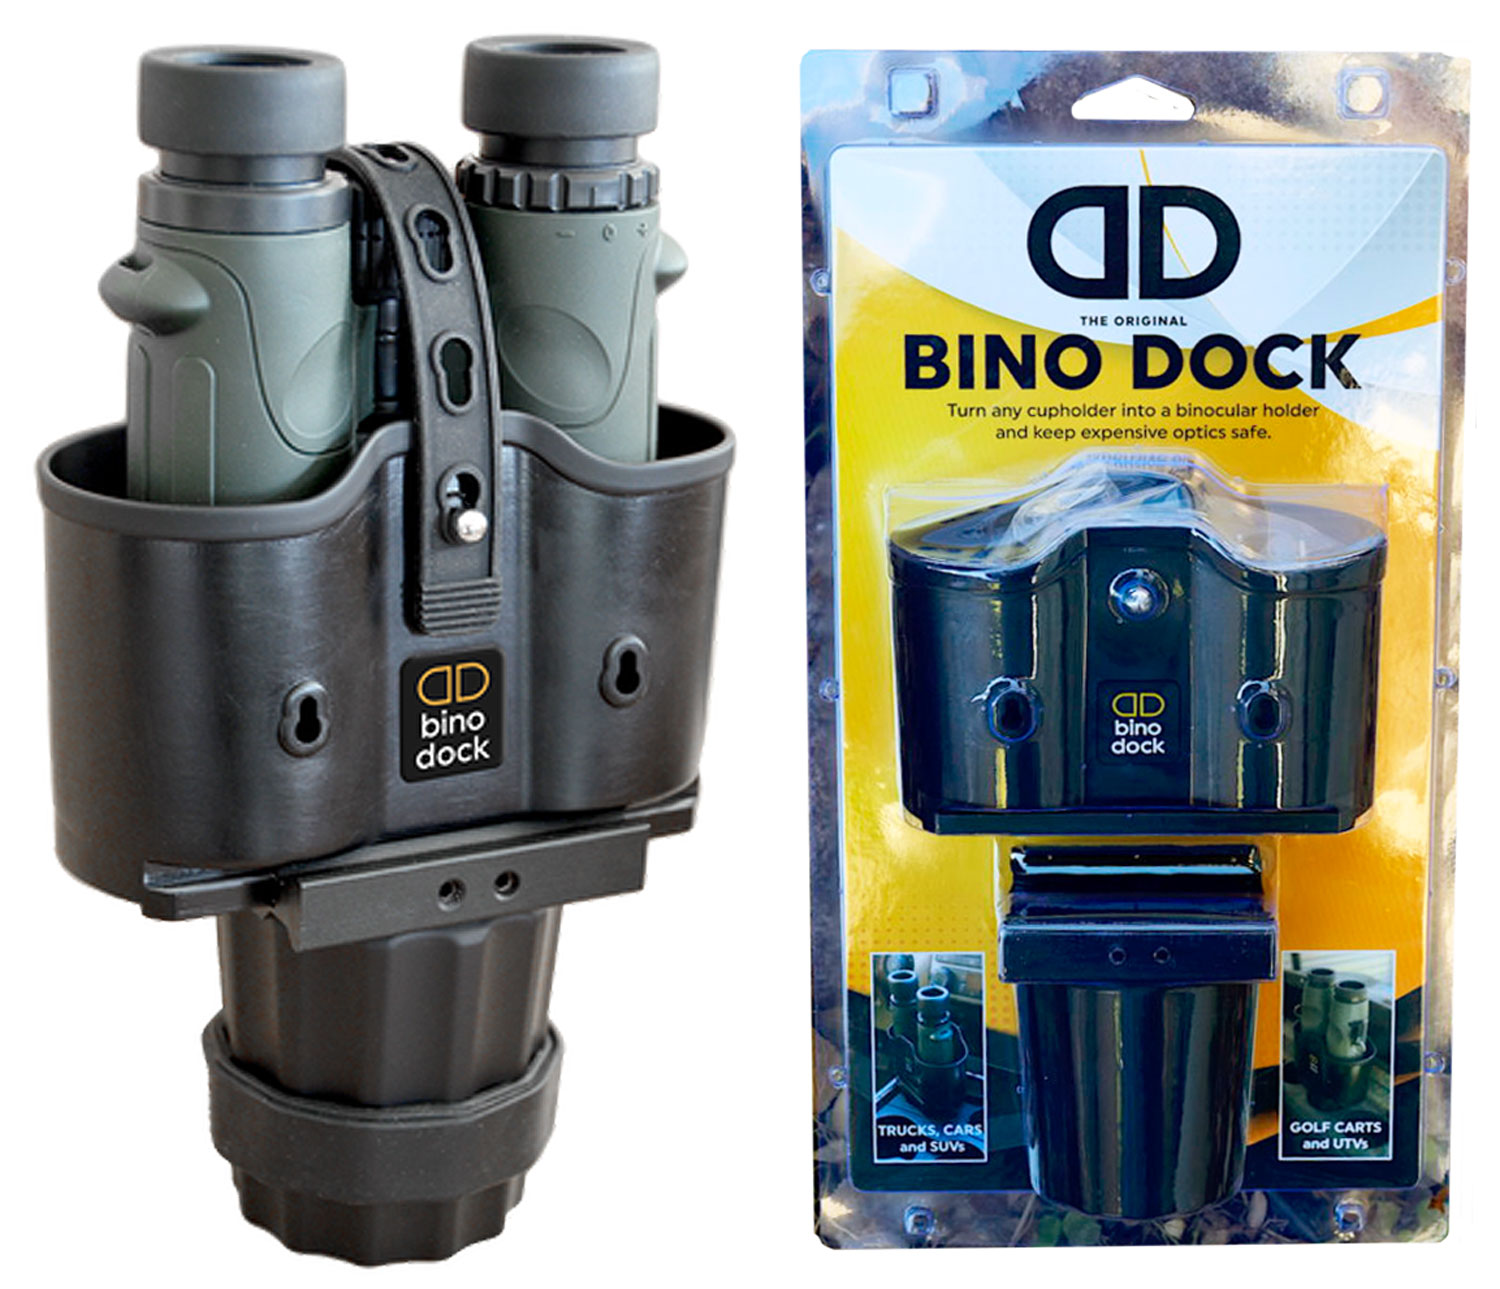 Bino Dock BD1 Bino Dock Bino Cup Holder Cup Holder Black